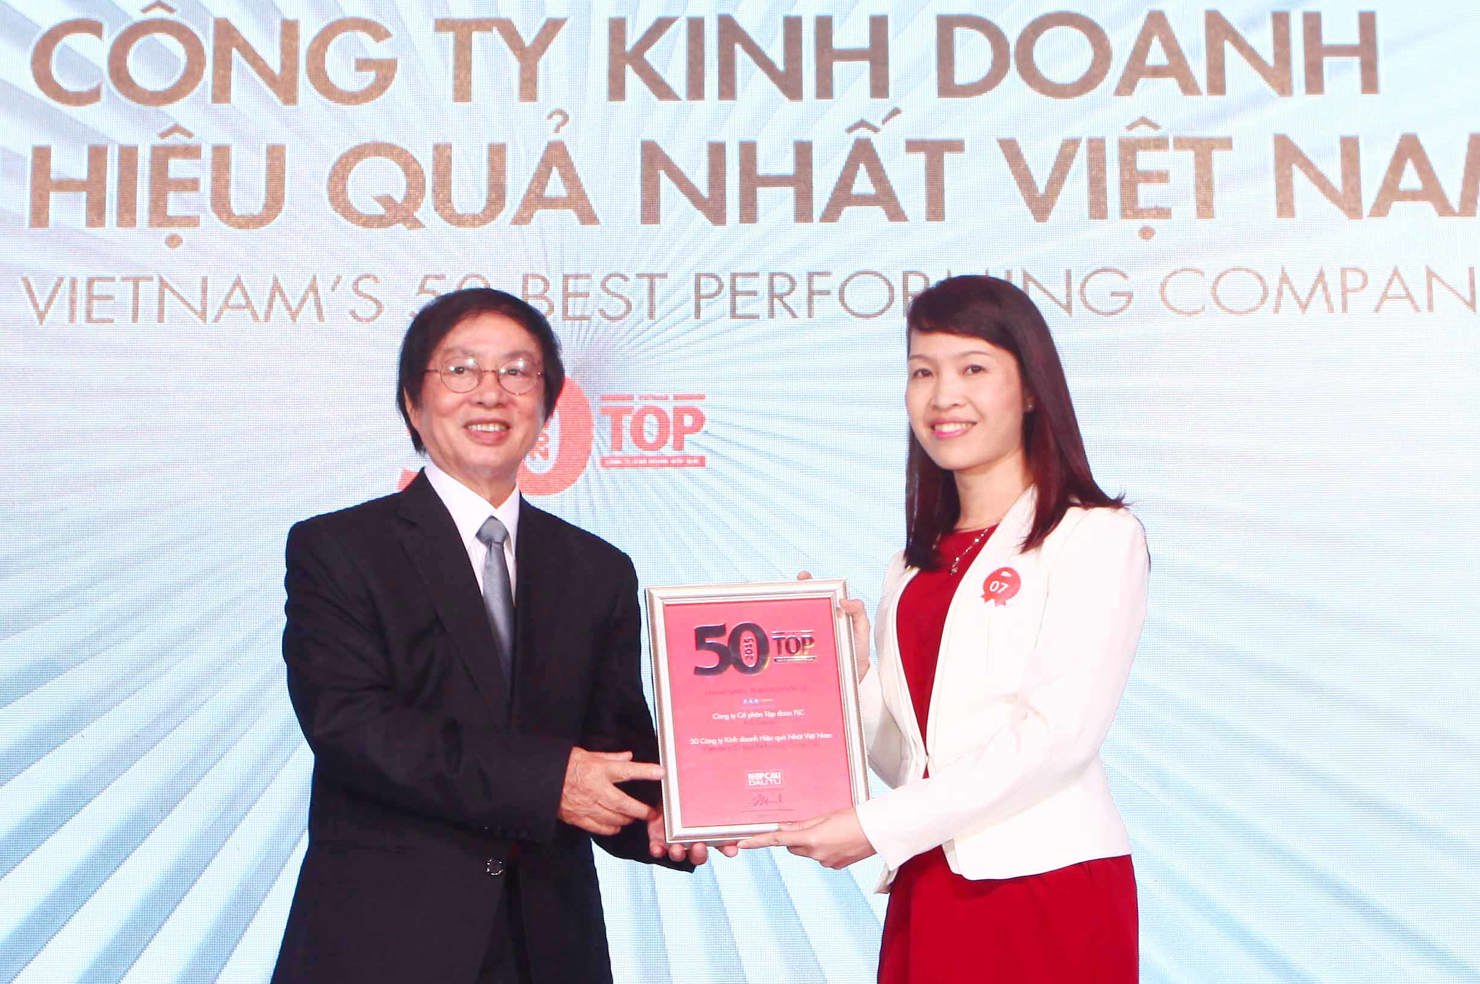 Bà Trần Thị My Lan, Phó Tổng giám đốc Tập đoàn FLC nhận bằng chứng nhận “Top 50 công ty kinh doanh hiệu quả nhất Việt Nam” từ Trưởng Ban tổ chức Đặng Nhật Minh. Nguồn: flc.vn